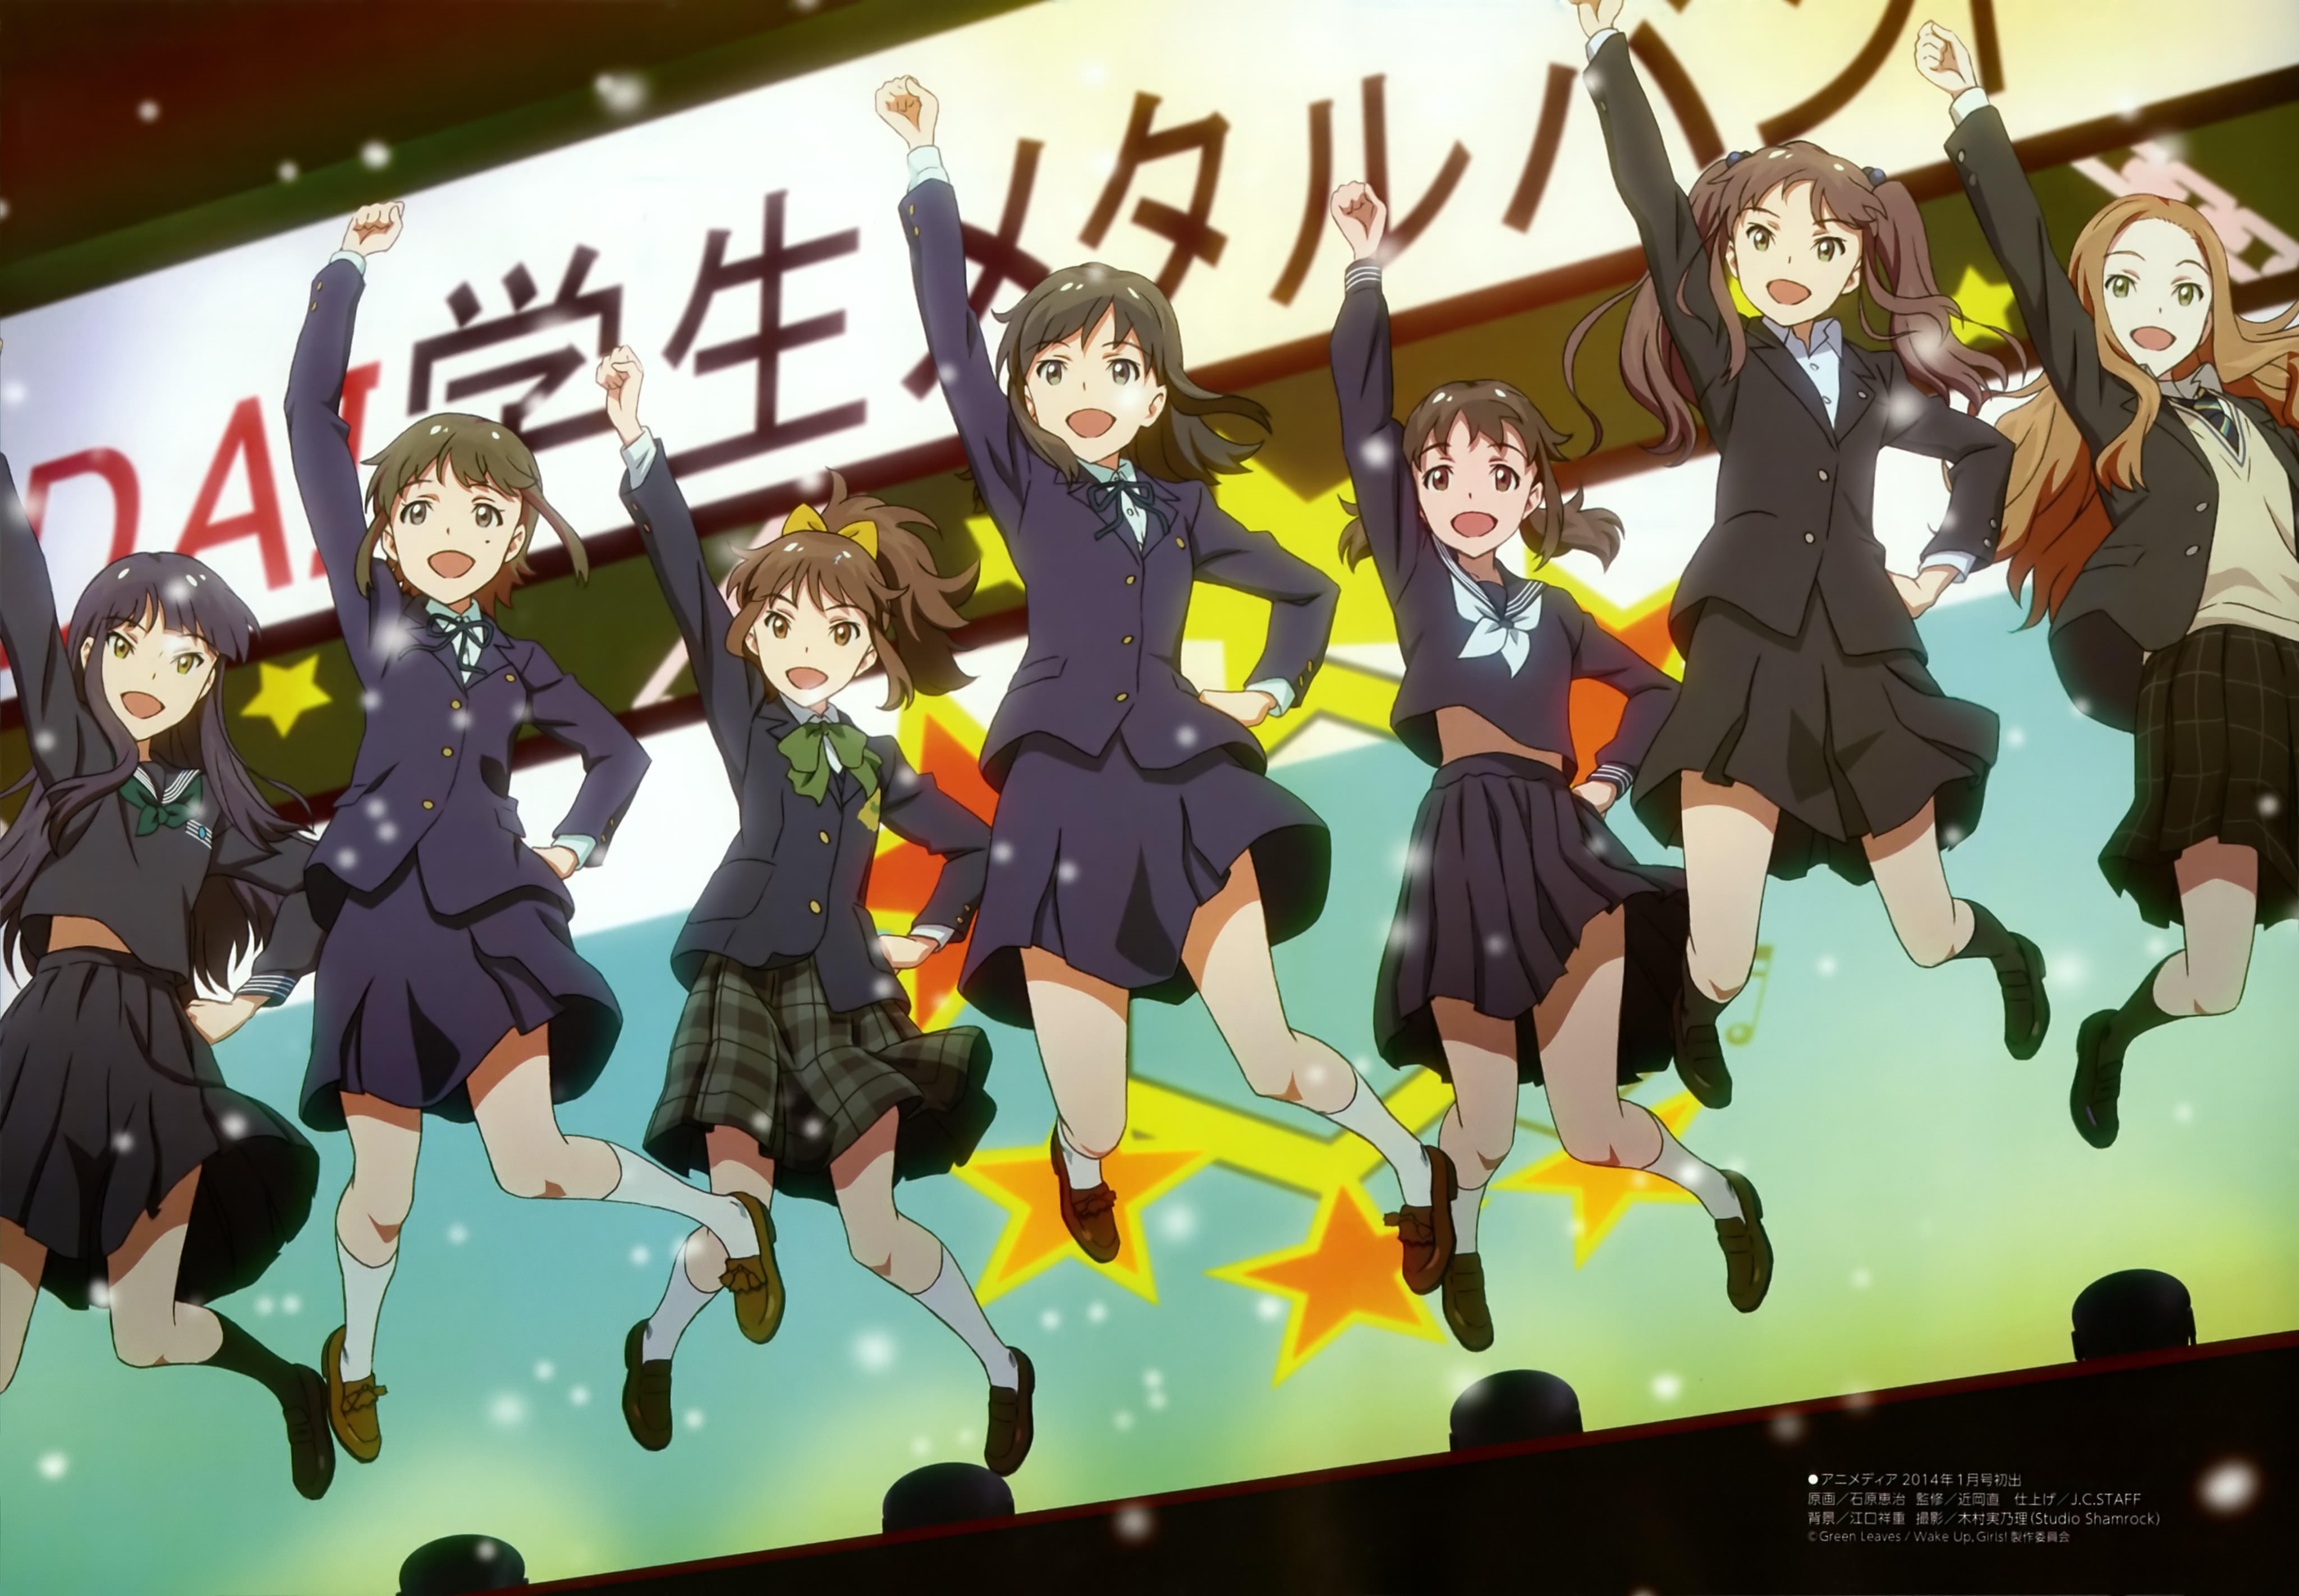 ウェイクアップ・ガールズ ! 2 (Wake Up, Girls!) : 壁紙 厳選アニメ壁紙-アルチビオ Anime Wallpaper